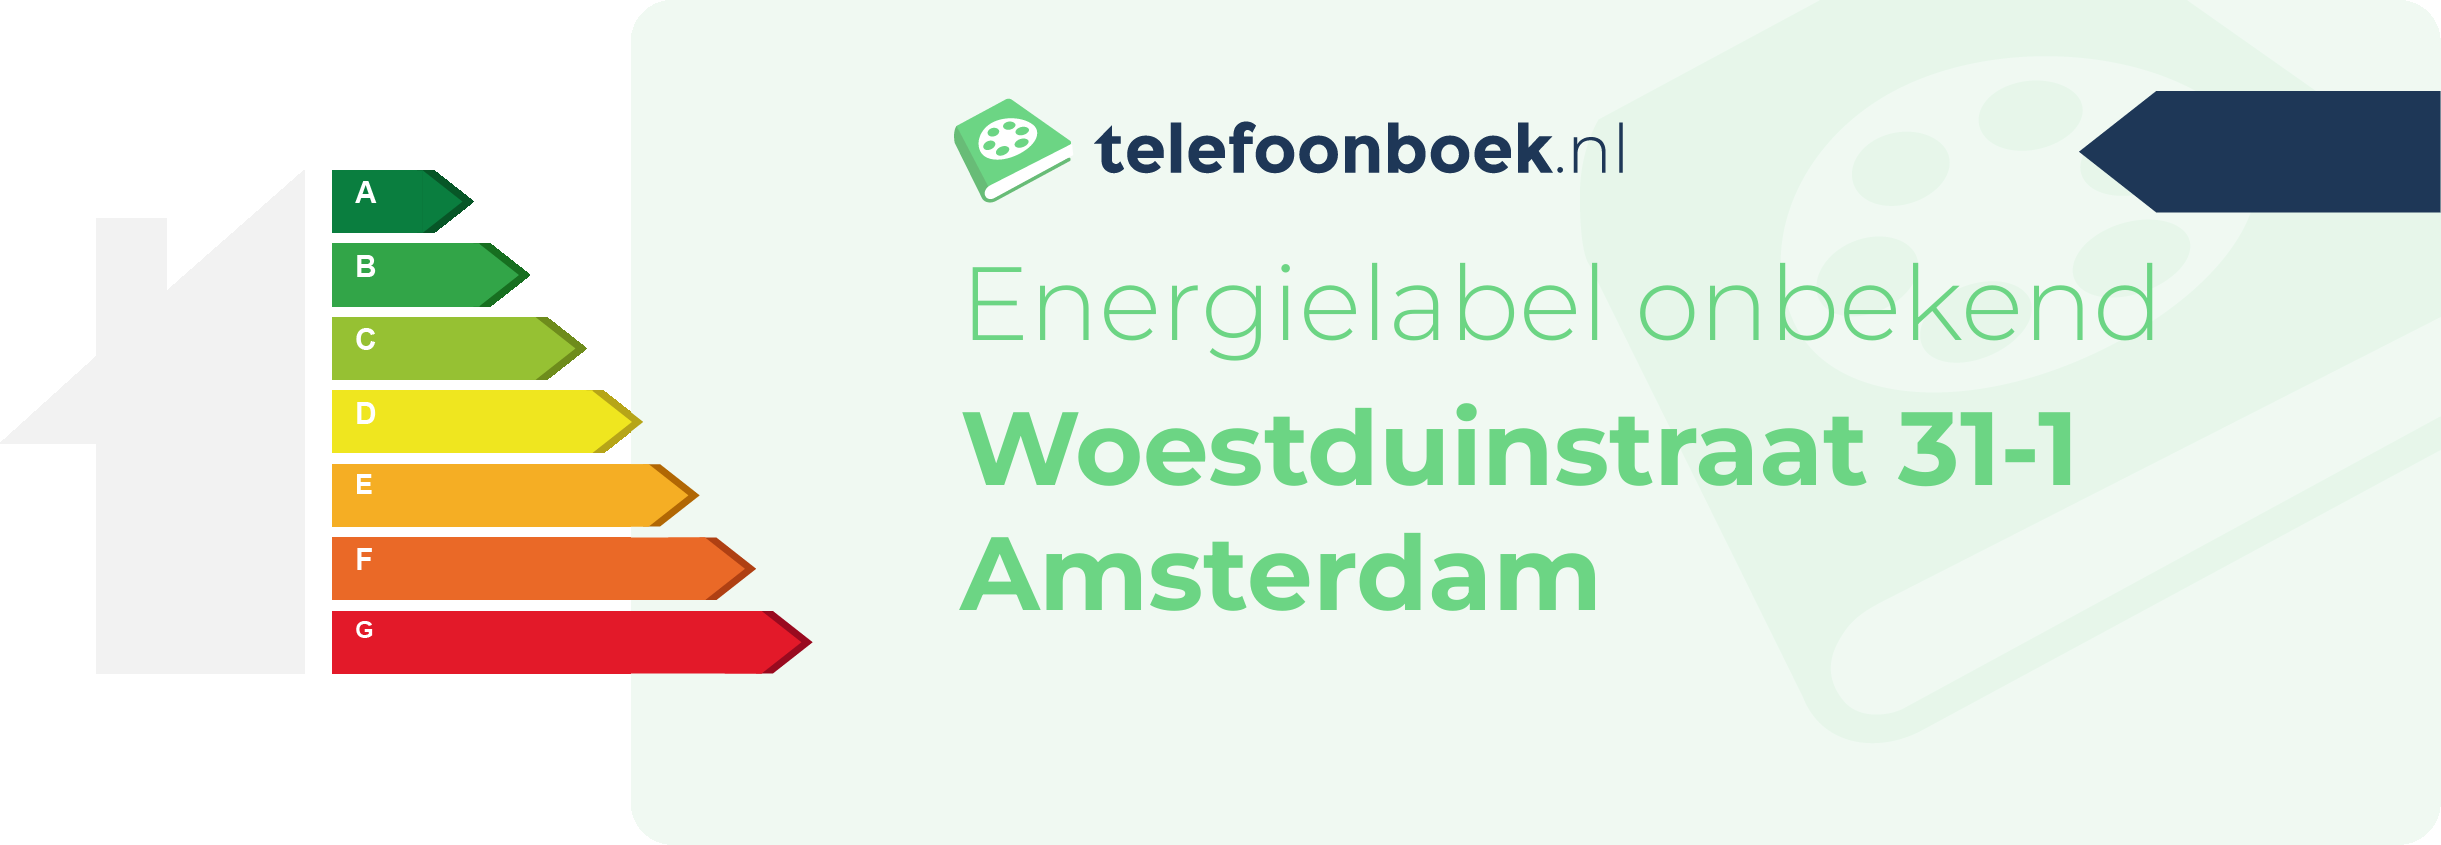 Energielabel Woestduinstraat 31-1 Amsterdam